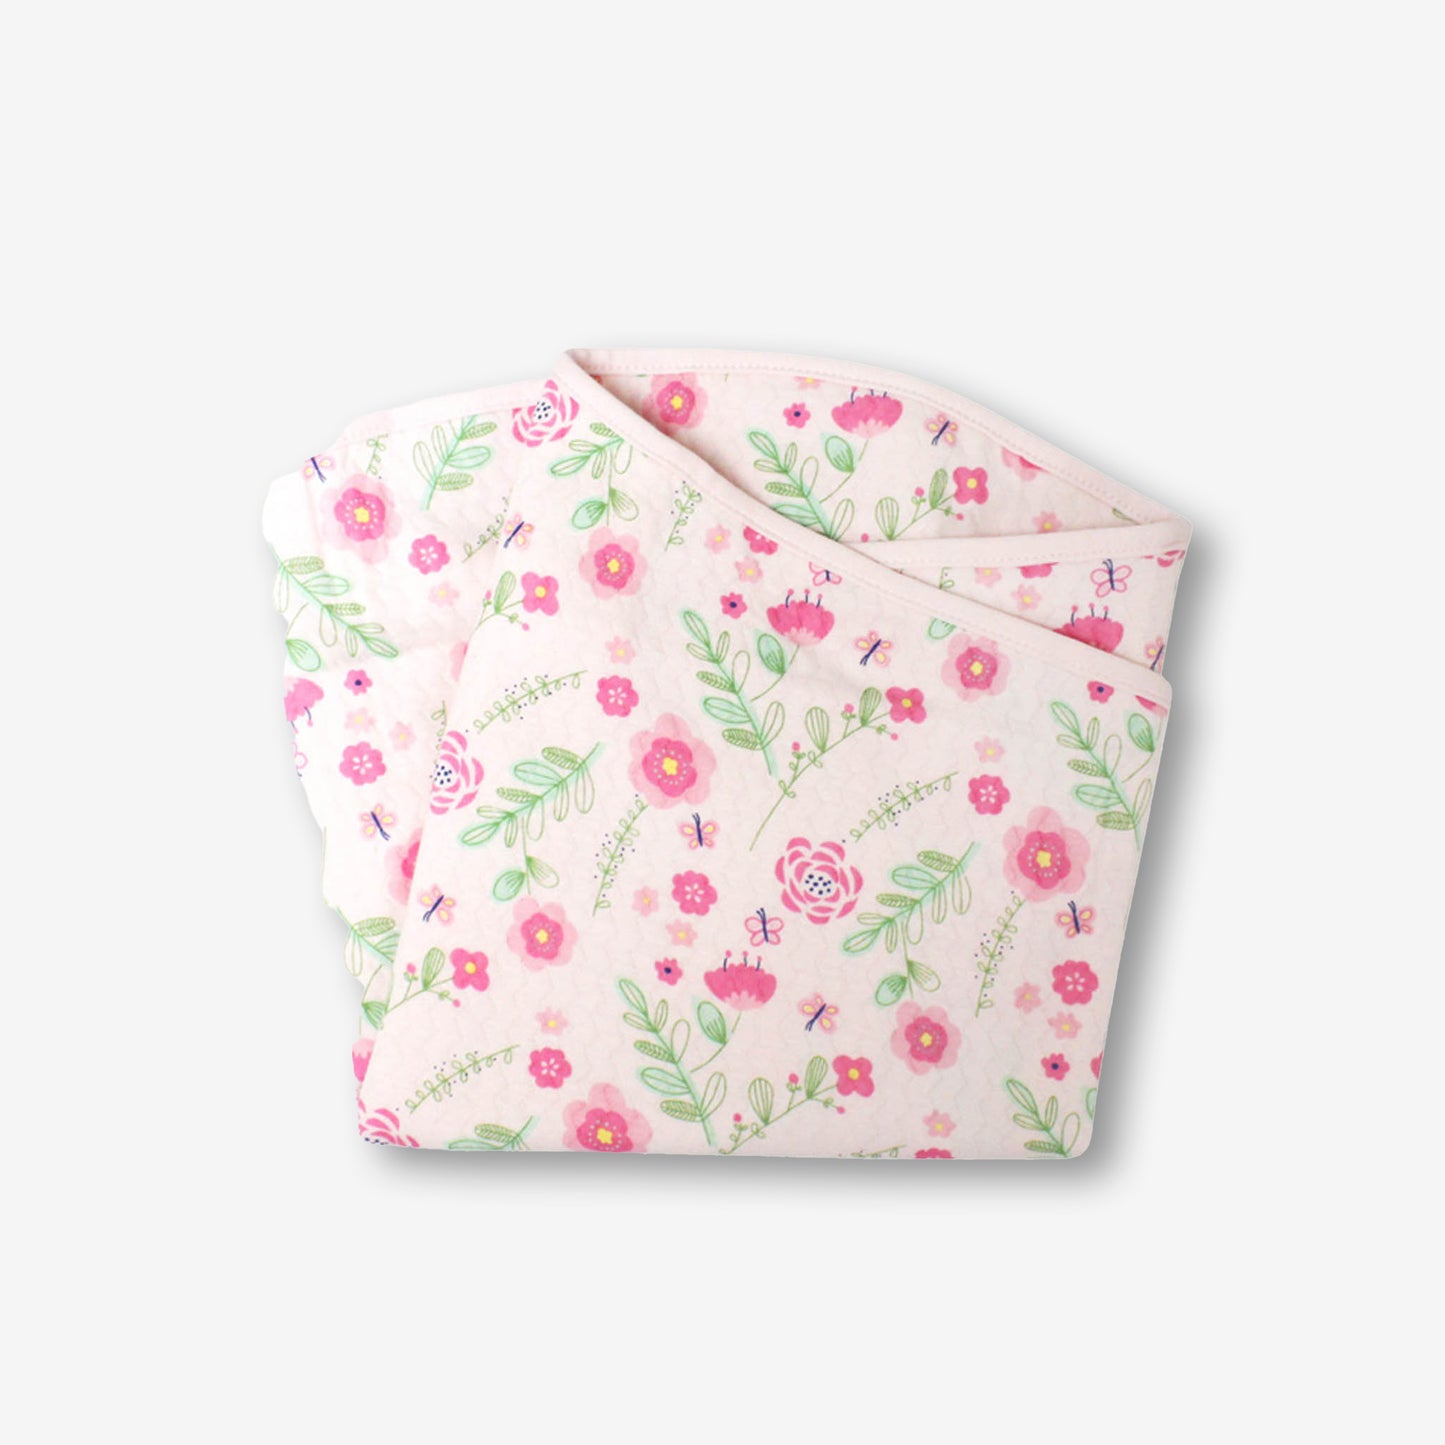 夾絲棉初生包被-淺粉紅色/花兒印花